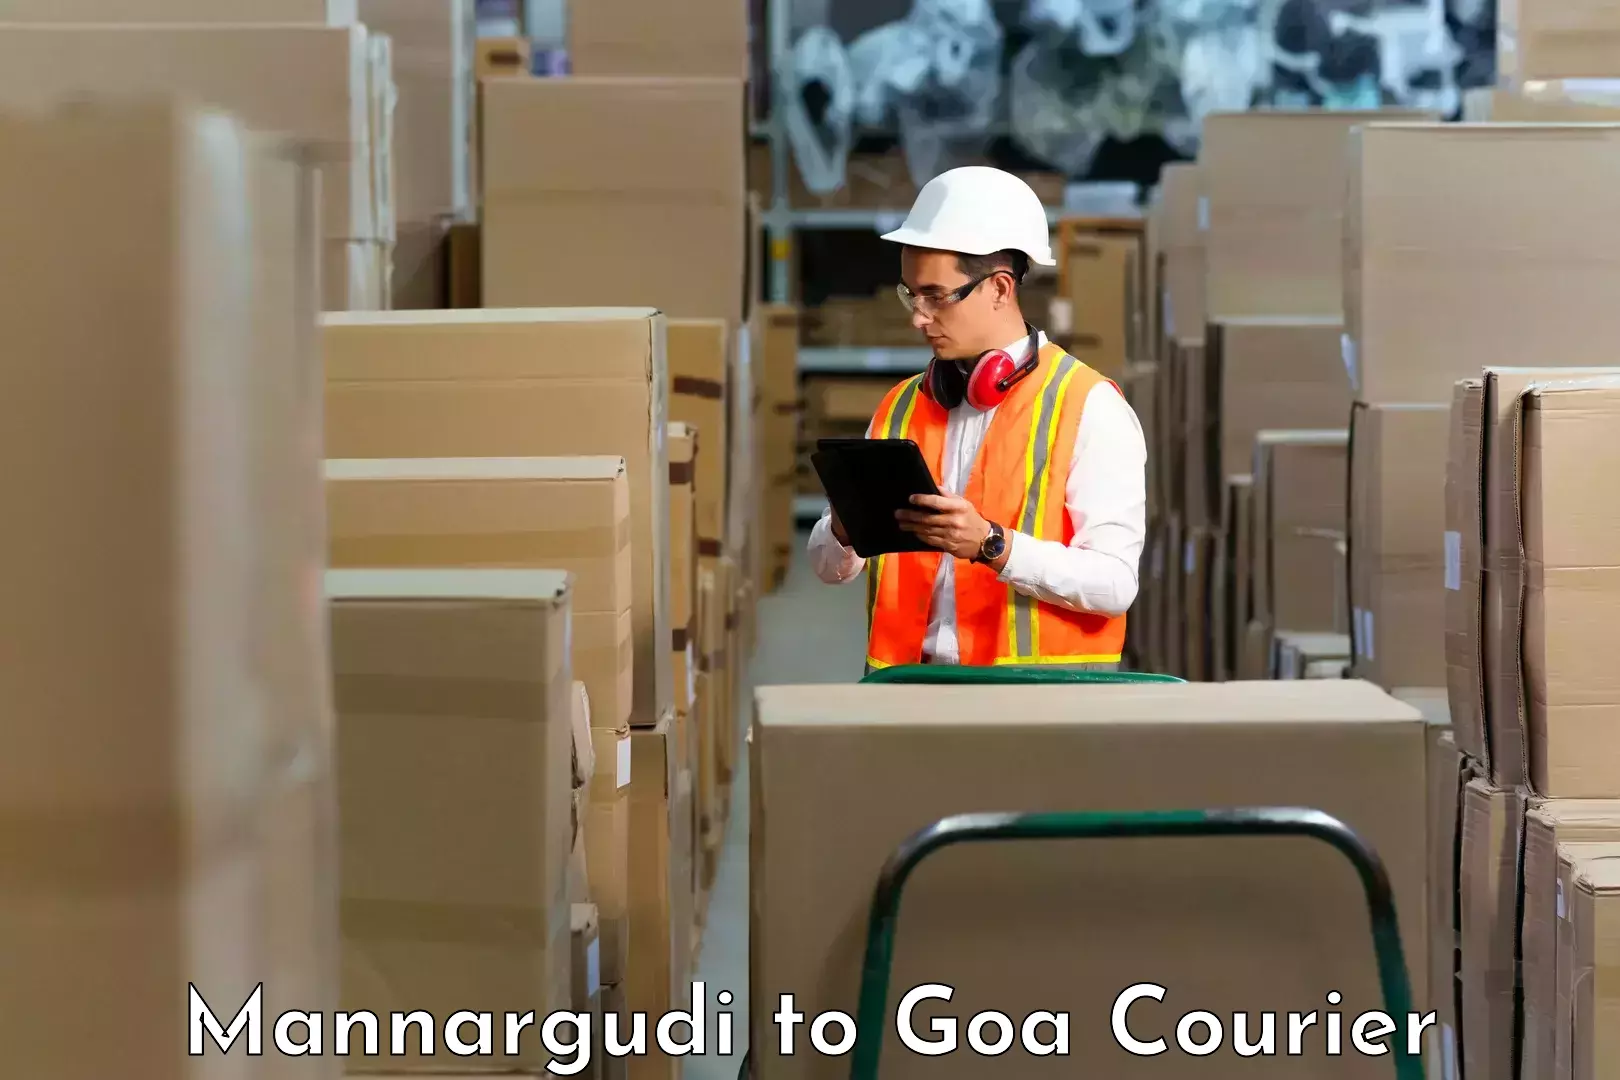 Door-to-door freight service Mannargudi to NIT Goa